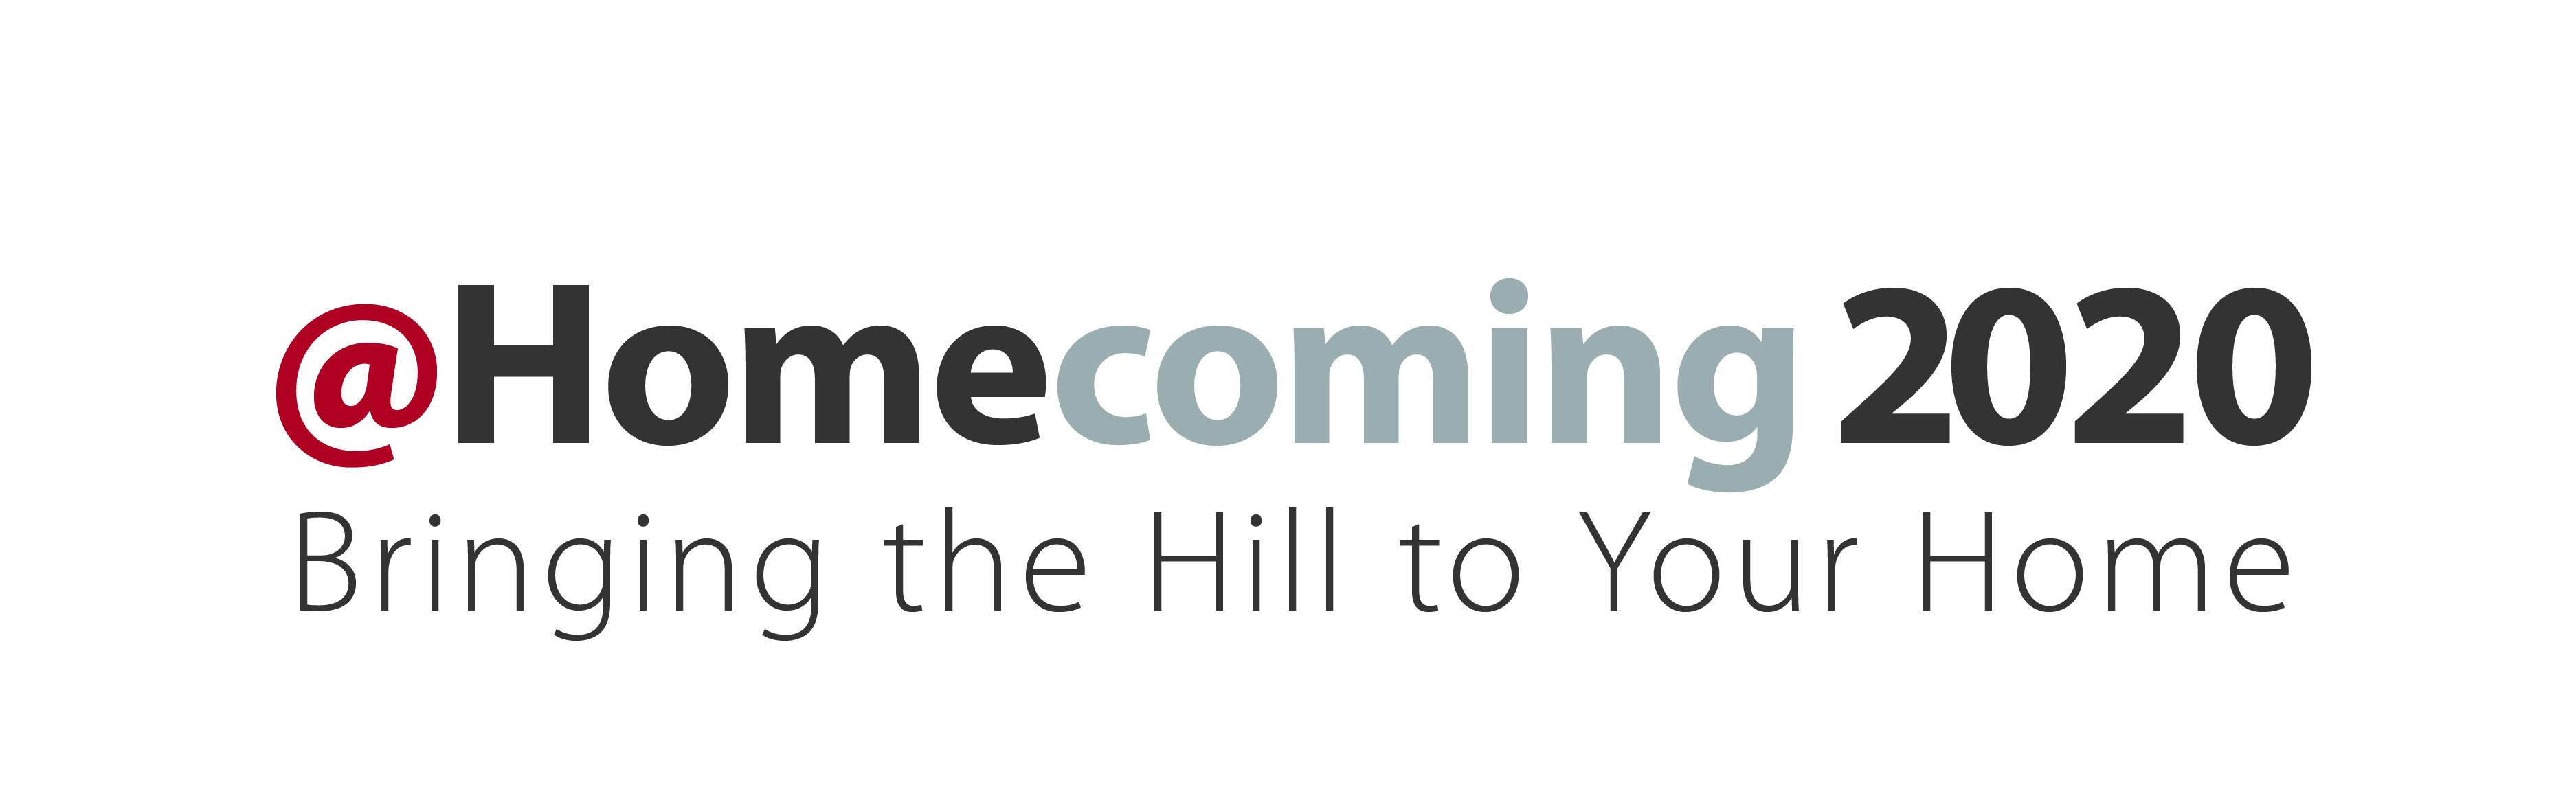 Homecoming 2020 Logo